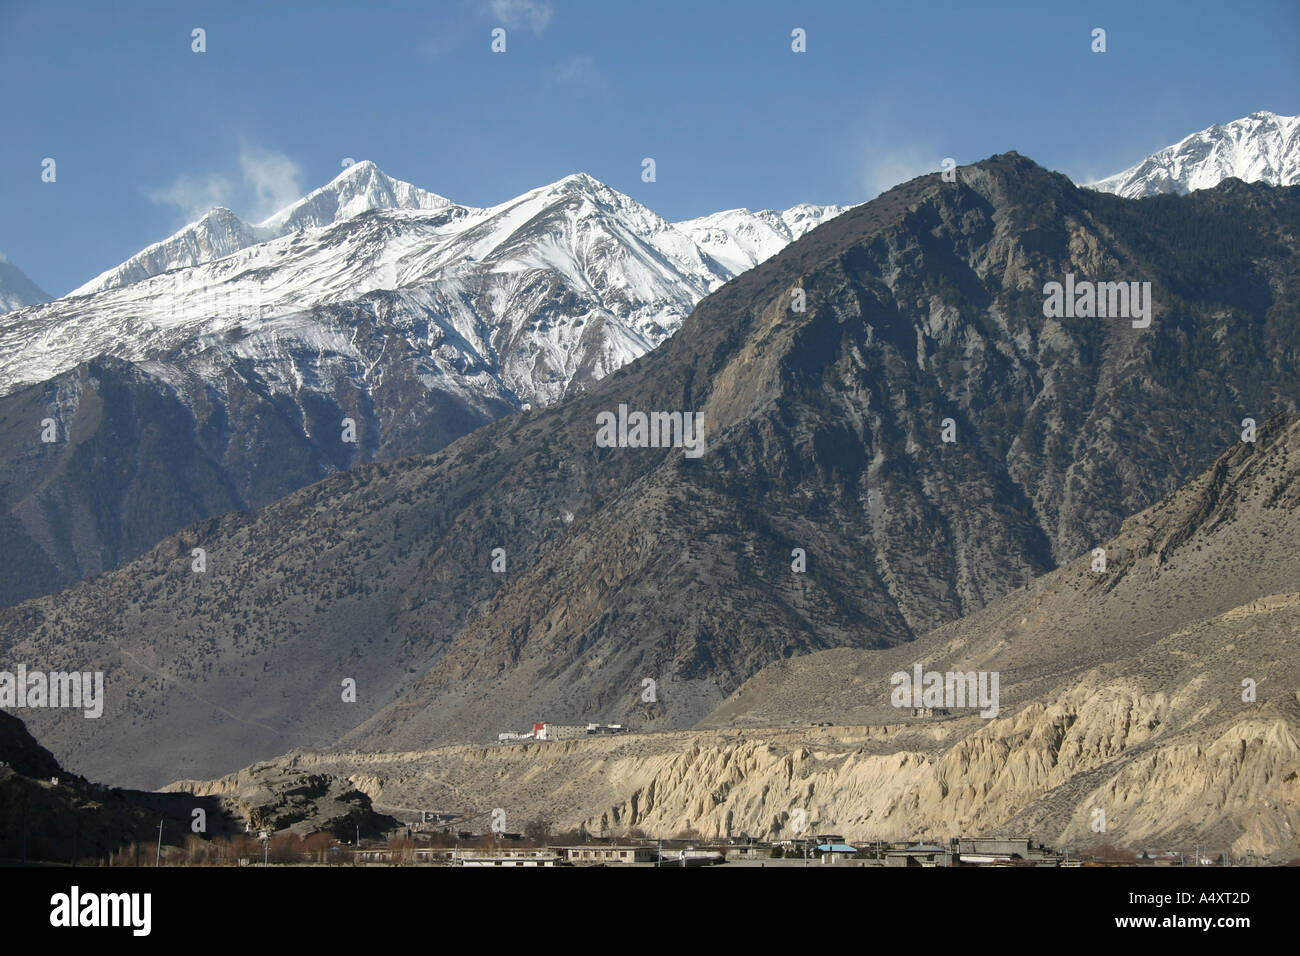 La vallée de la Kali Gandaki dans la région himalayenne du bas Mustang au Népal Banque D'Images